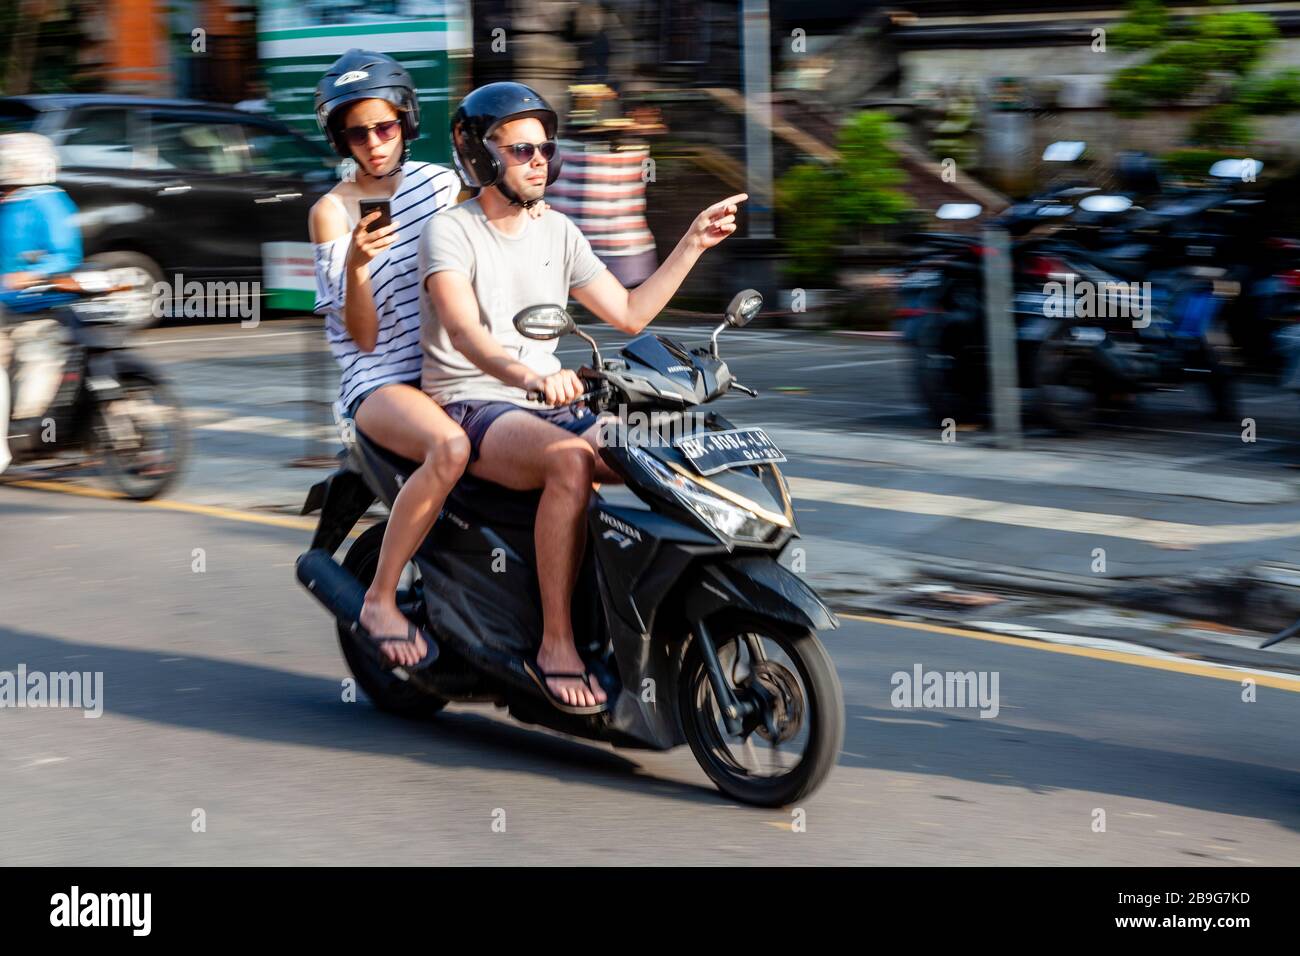 Los turistas que utilizan una aplicación para navegar por su camino aroung Ubud, personas que viajan en motocicleta, Ubud, Bali, Indonesia. Foto de stock